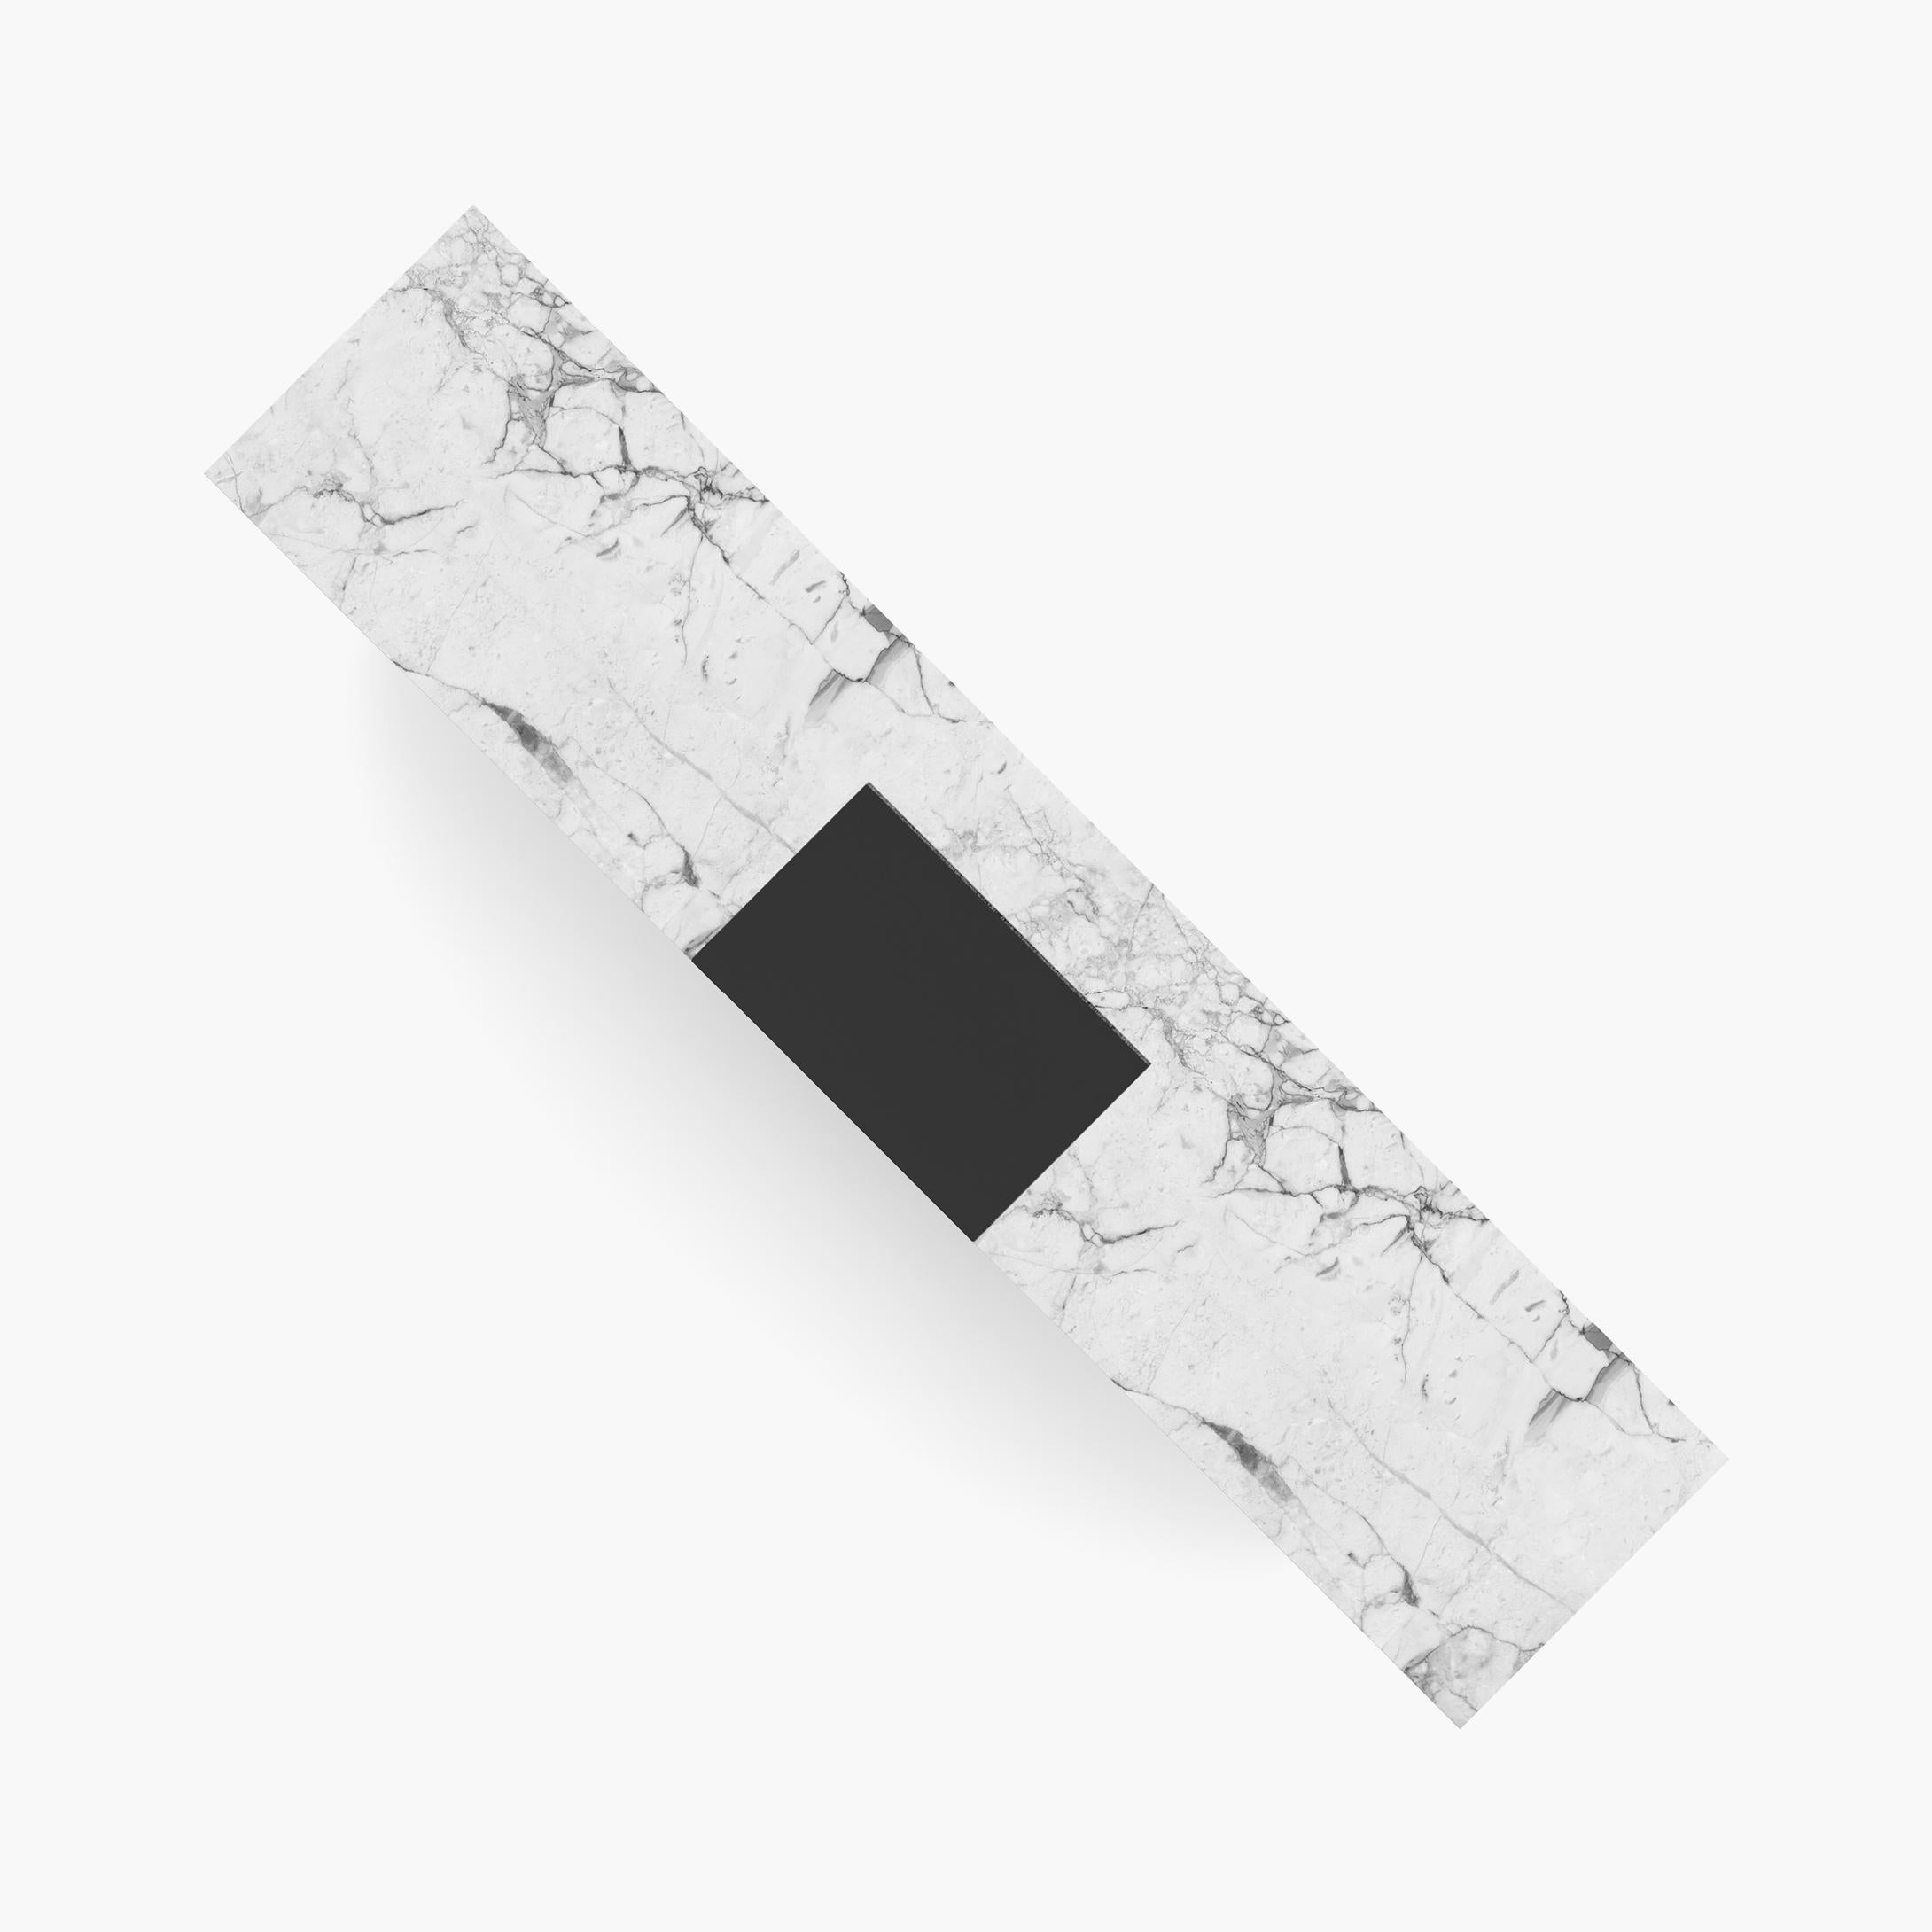 Cuir Bureau cubique, marbre blanc, tiroir en cuir 400x75x75cm, Allemagne, fabrication artisanale pc1/1 en vente